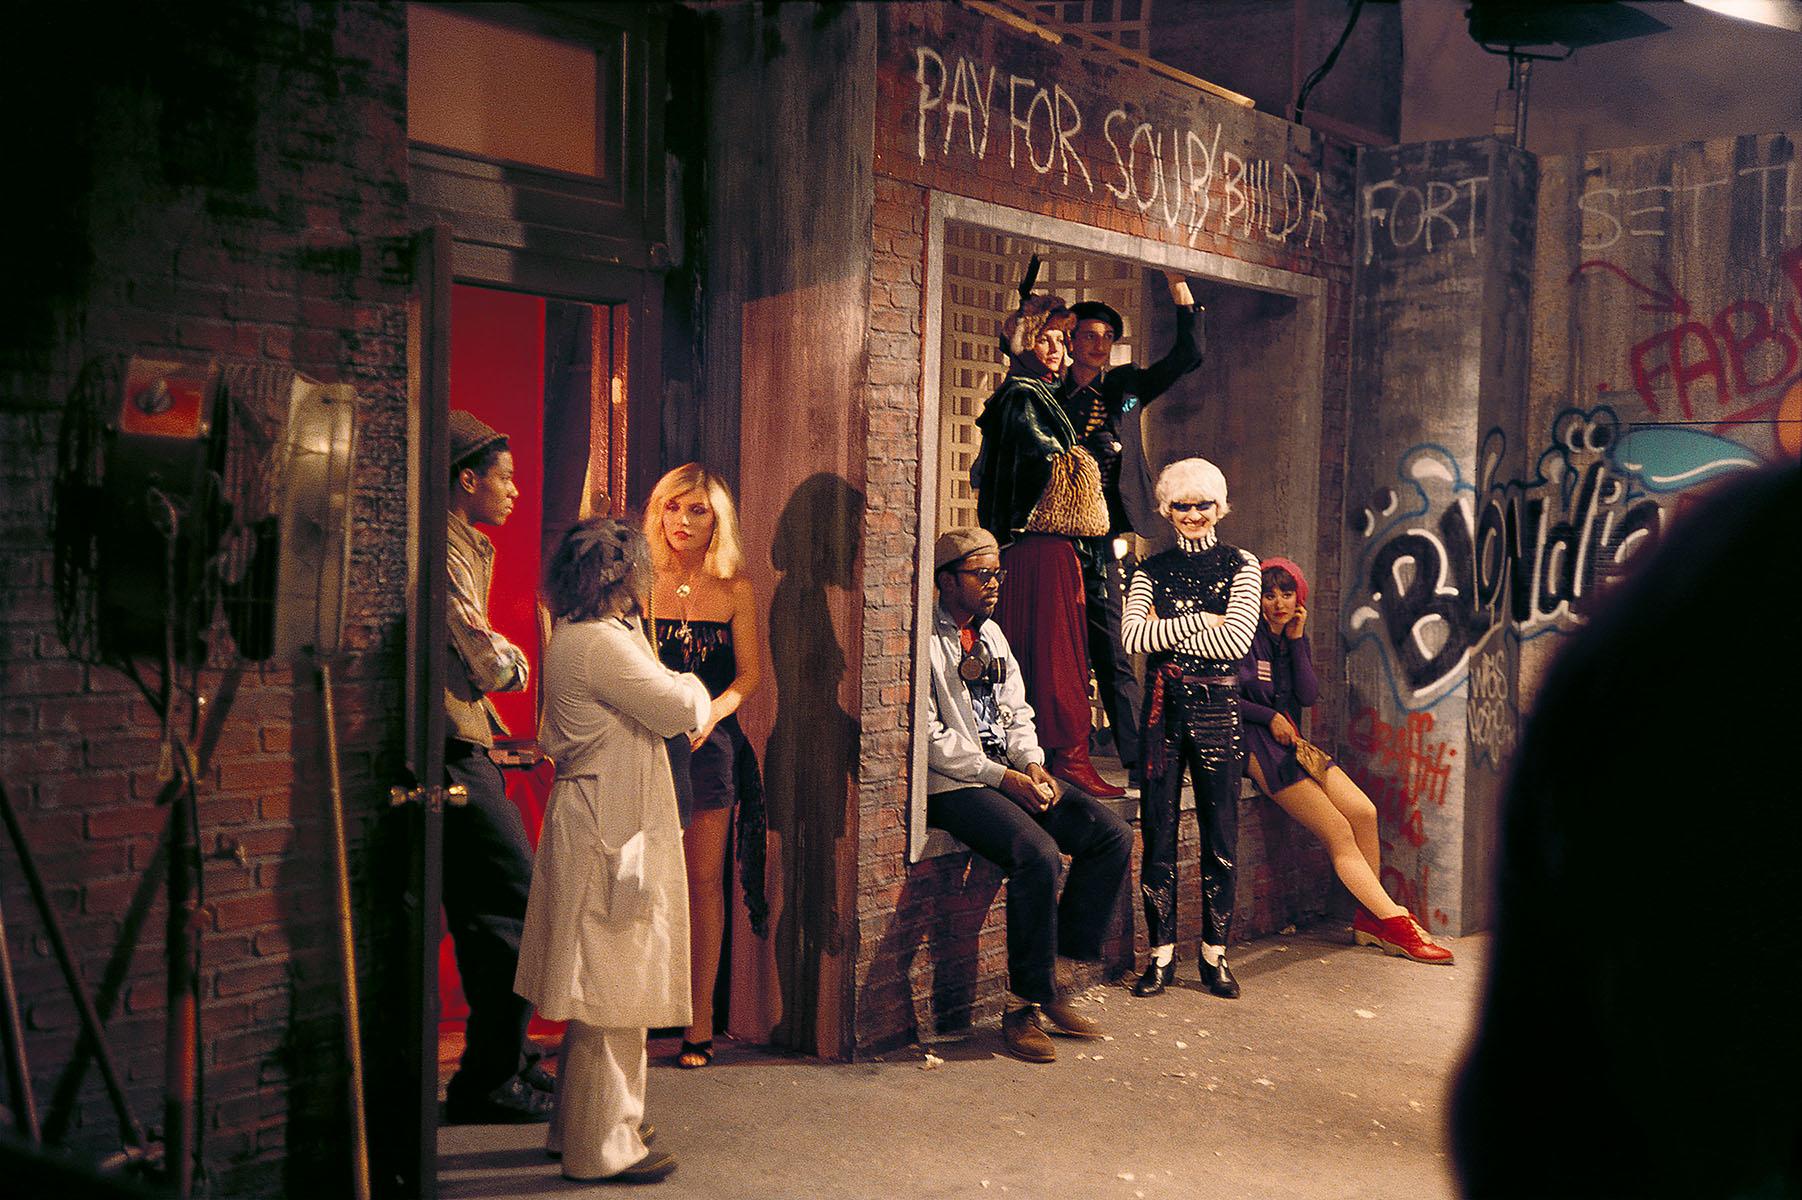 Charlie Ahearn, "Rapture" 1981 :
Une rare photographie historique de Jean-Michel Basquiat, Debbie Harry, Fab 5 Freddy prise par le directeur de Wild Style, Charlie Ahearn, sur le plateau de tournage de "Rapture" de Blondie. Cette œuvre a été